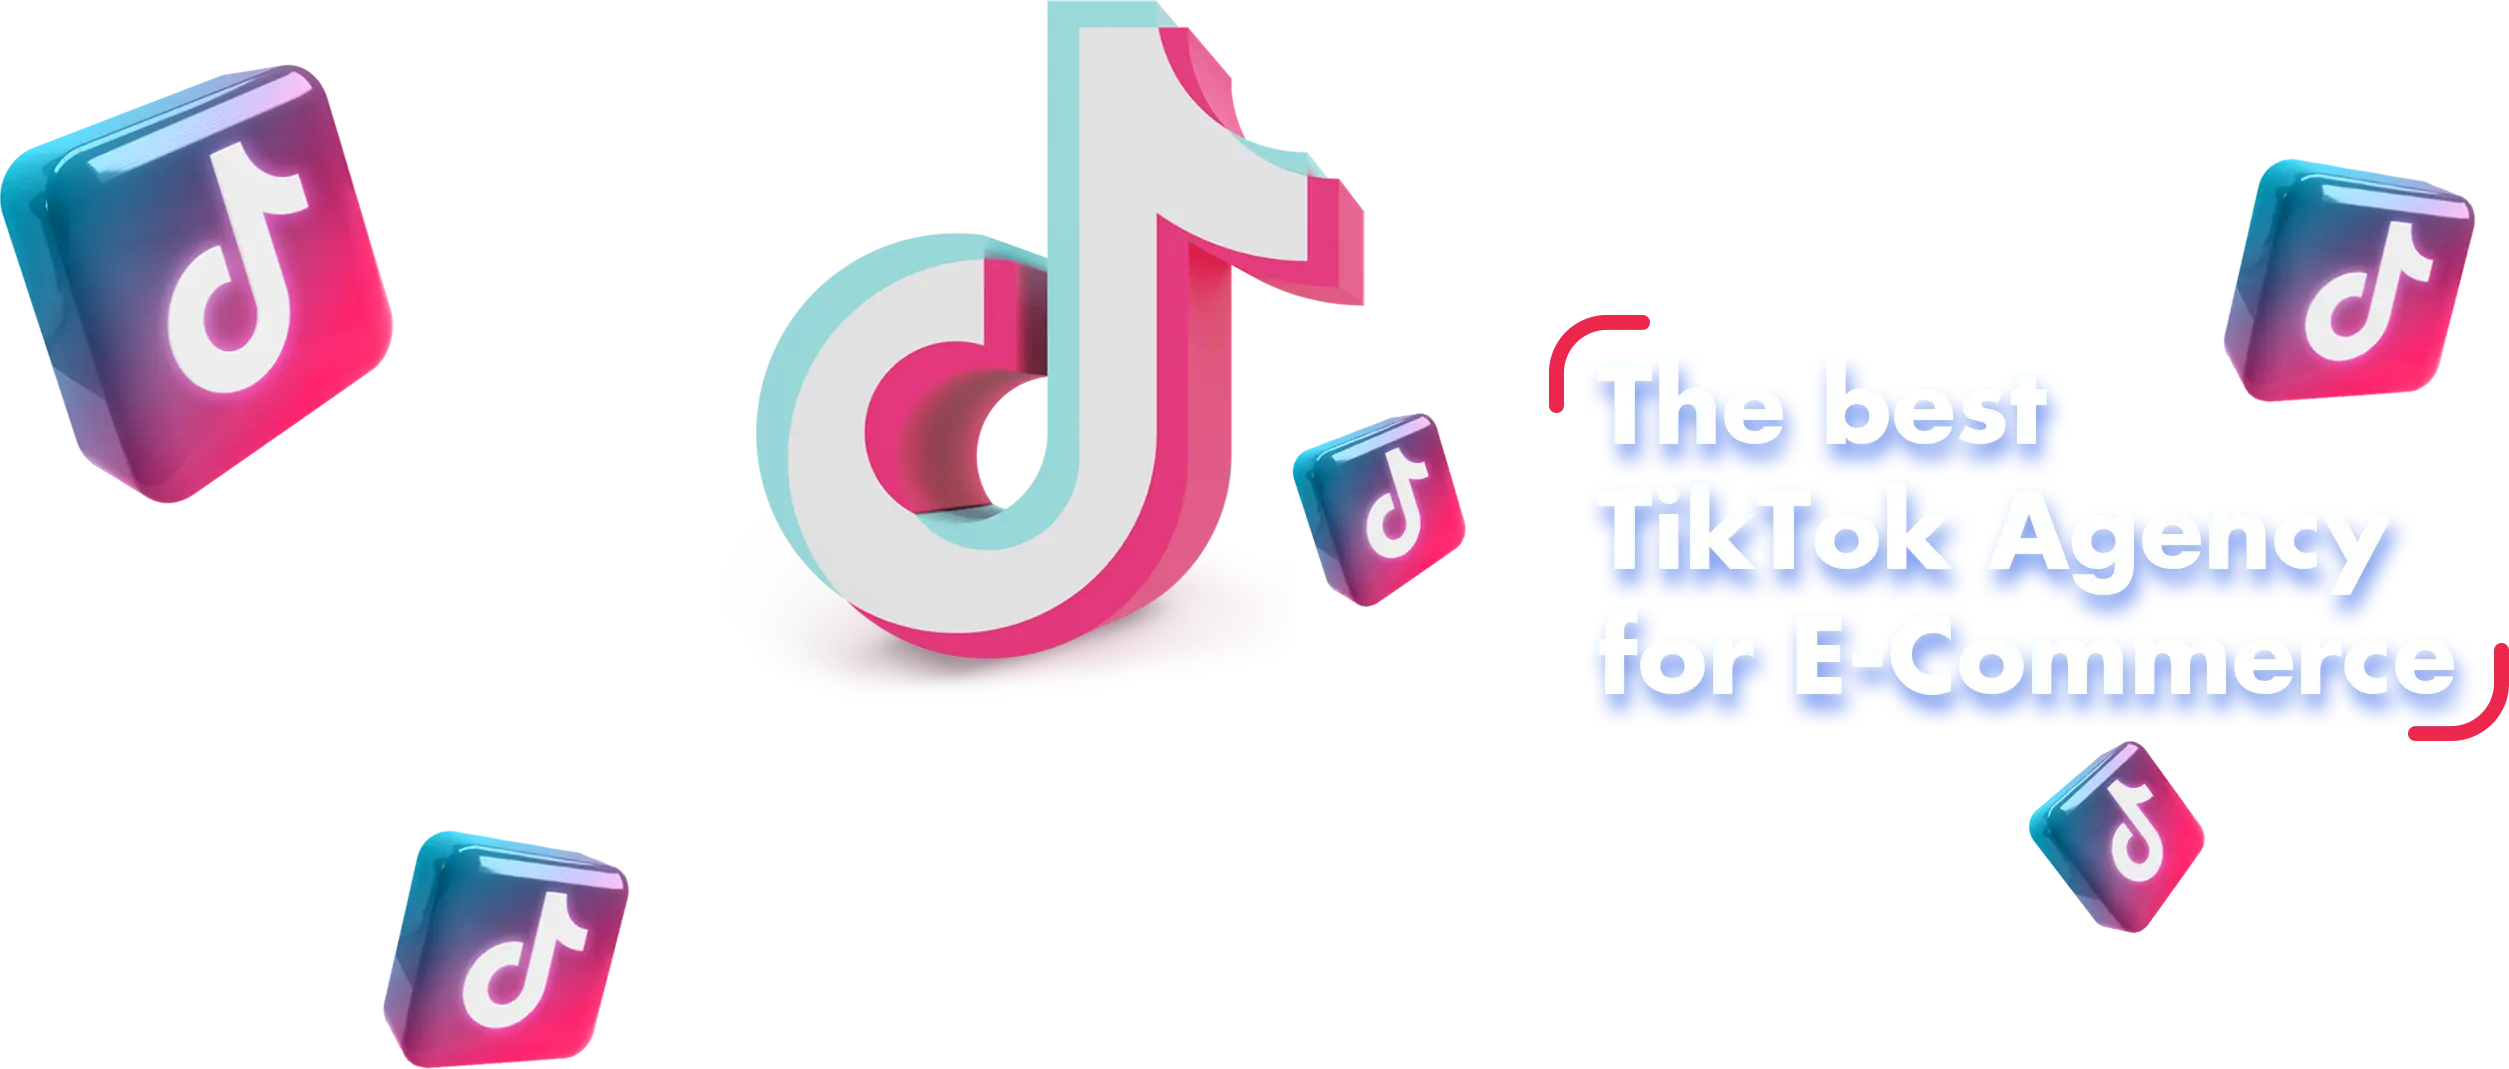 TikTok icon on background